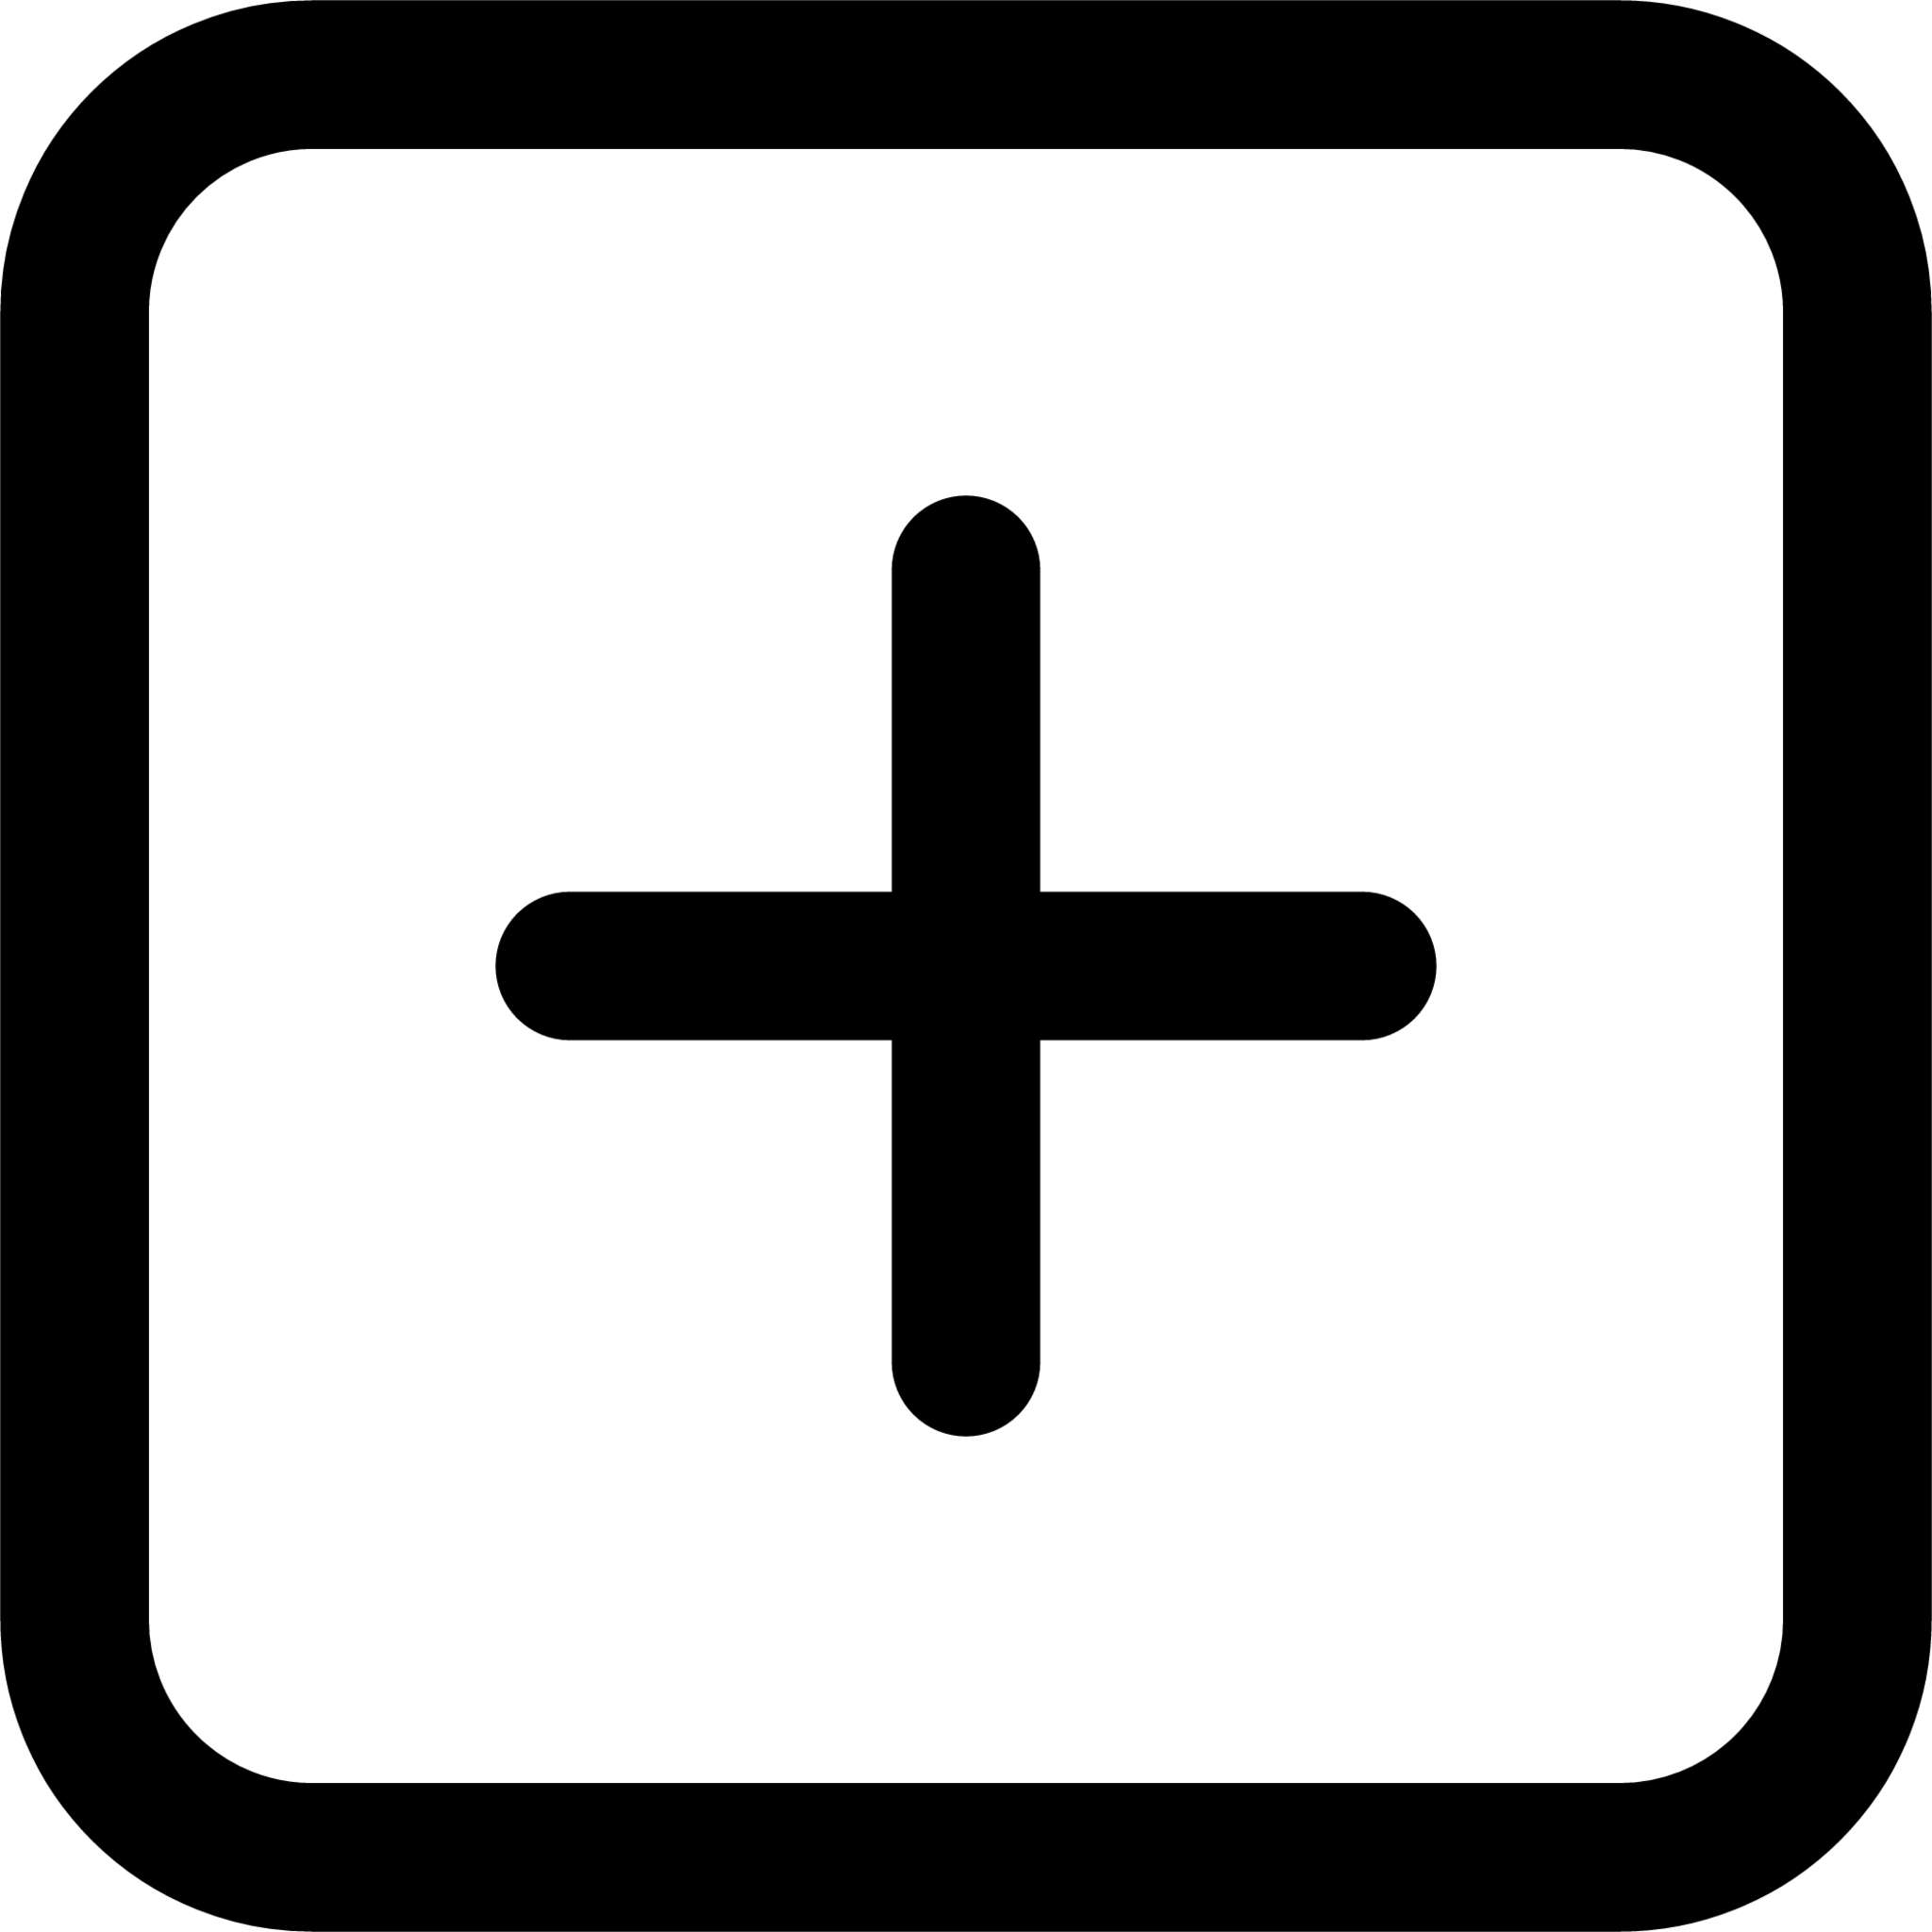 Add square (line) icon